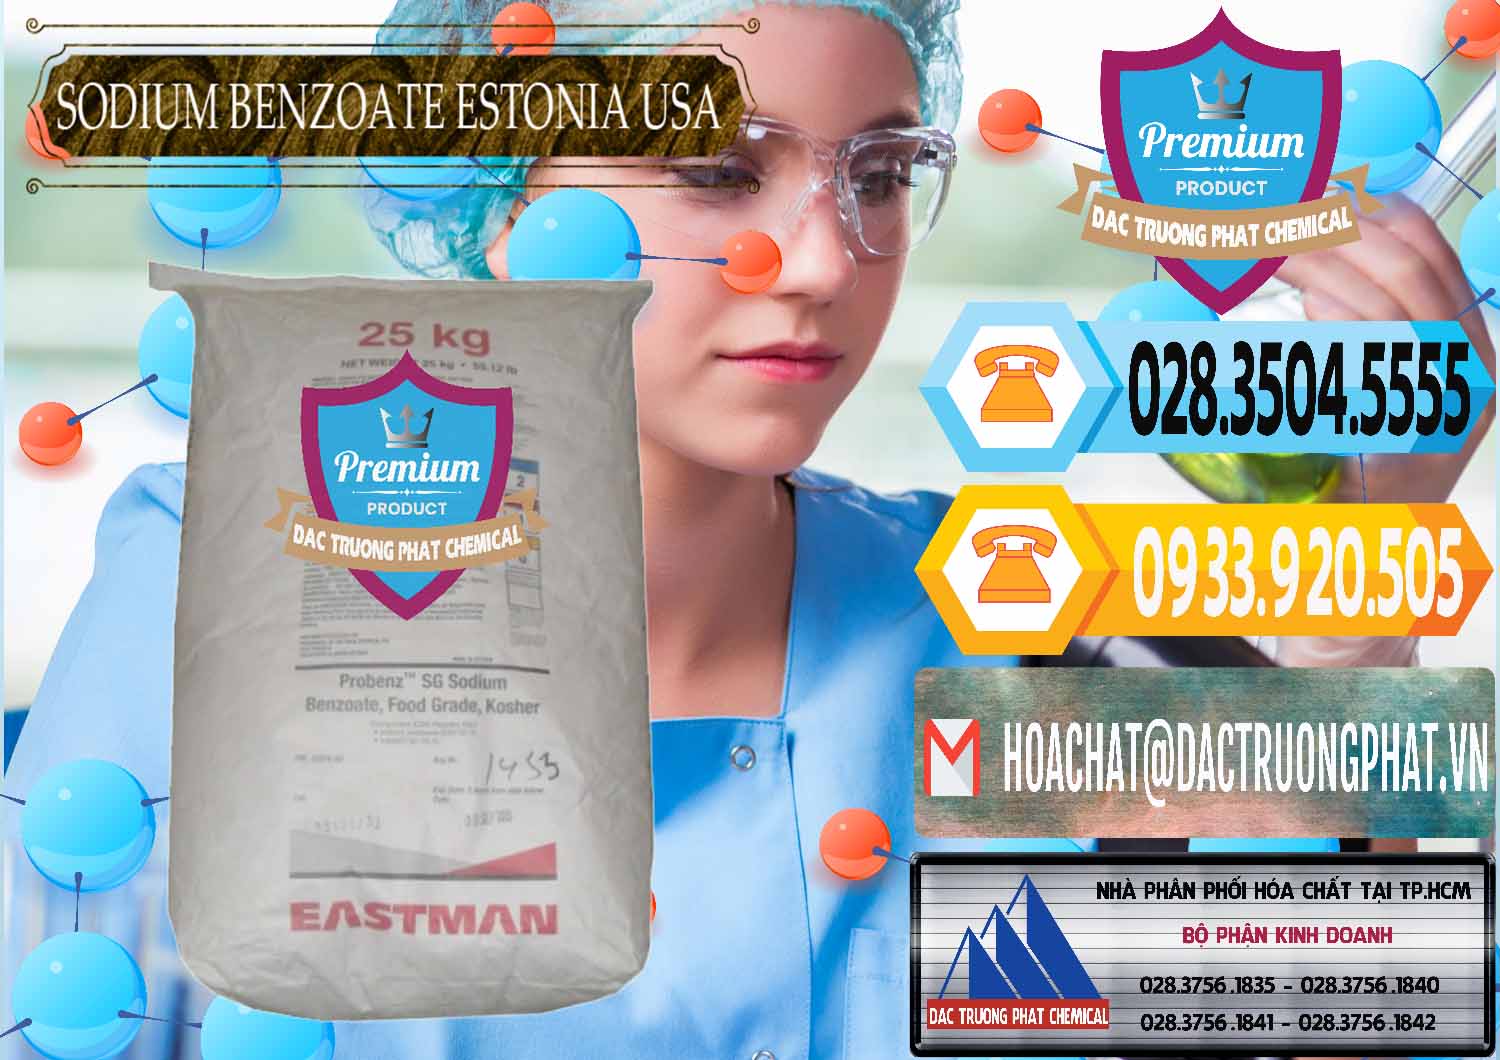 Đơn vị kinh doanh & bán Sodium Benzoate - Mốc Bột Estonia Mỹ USA - 0468 - Đơn vị cung cấp ( phân phối ) hóa chất tại TP.HCM - hoachattayrua.net